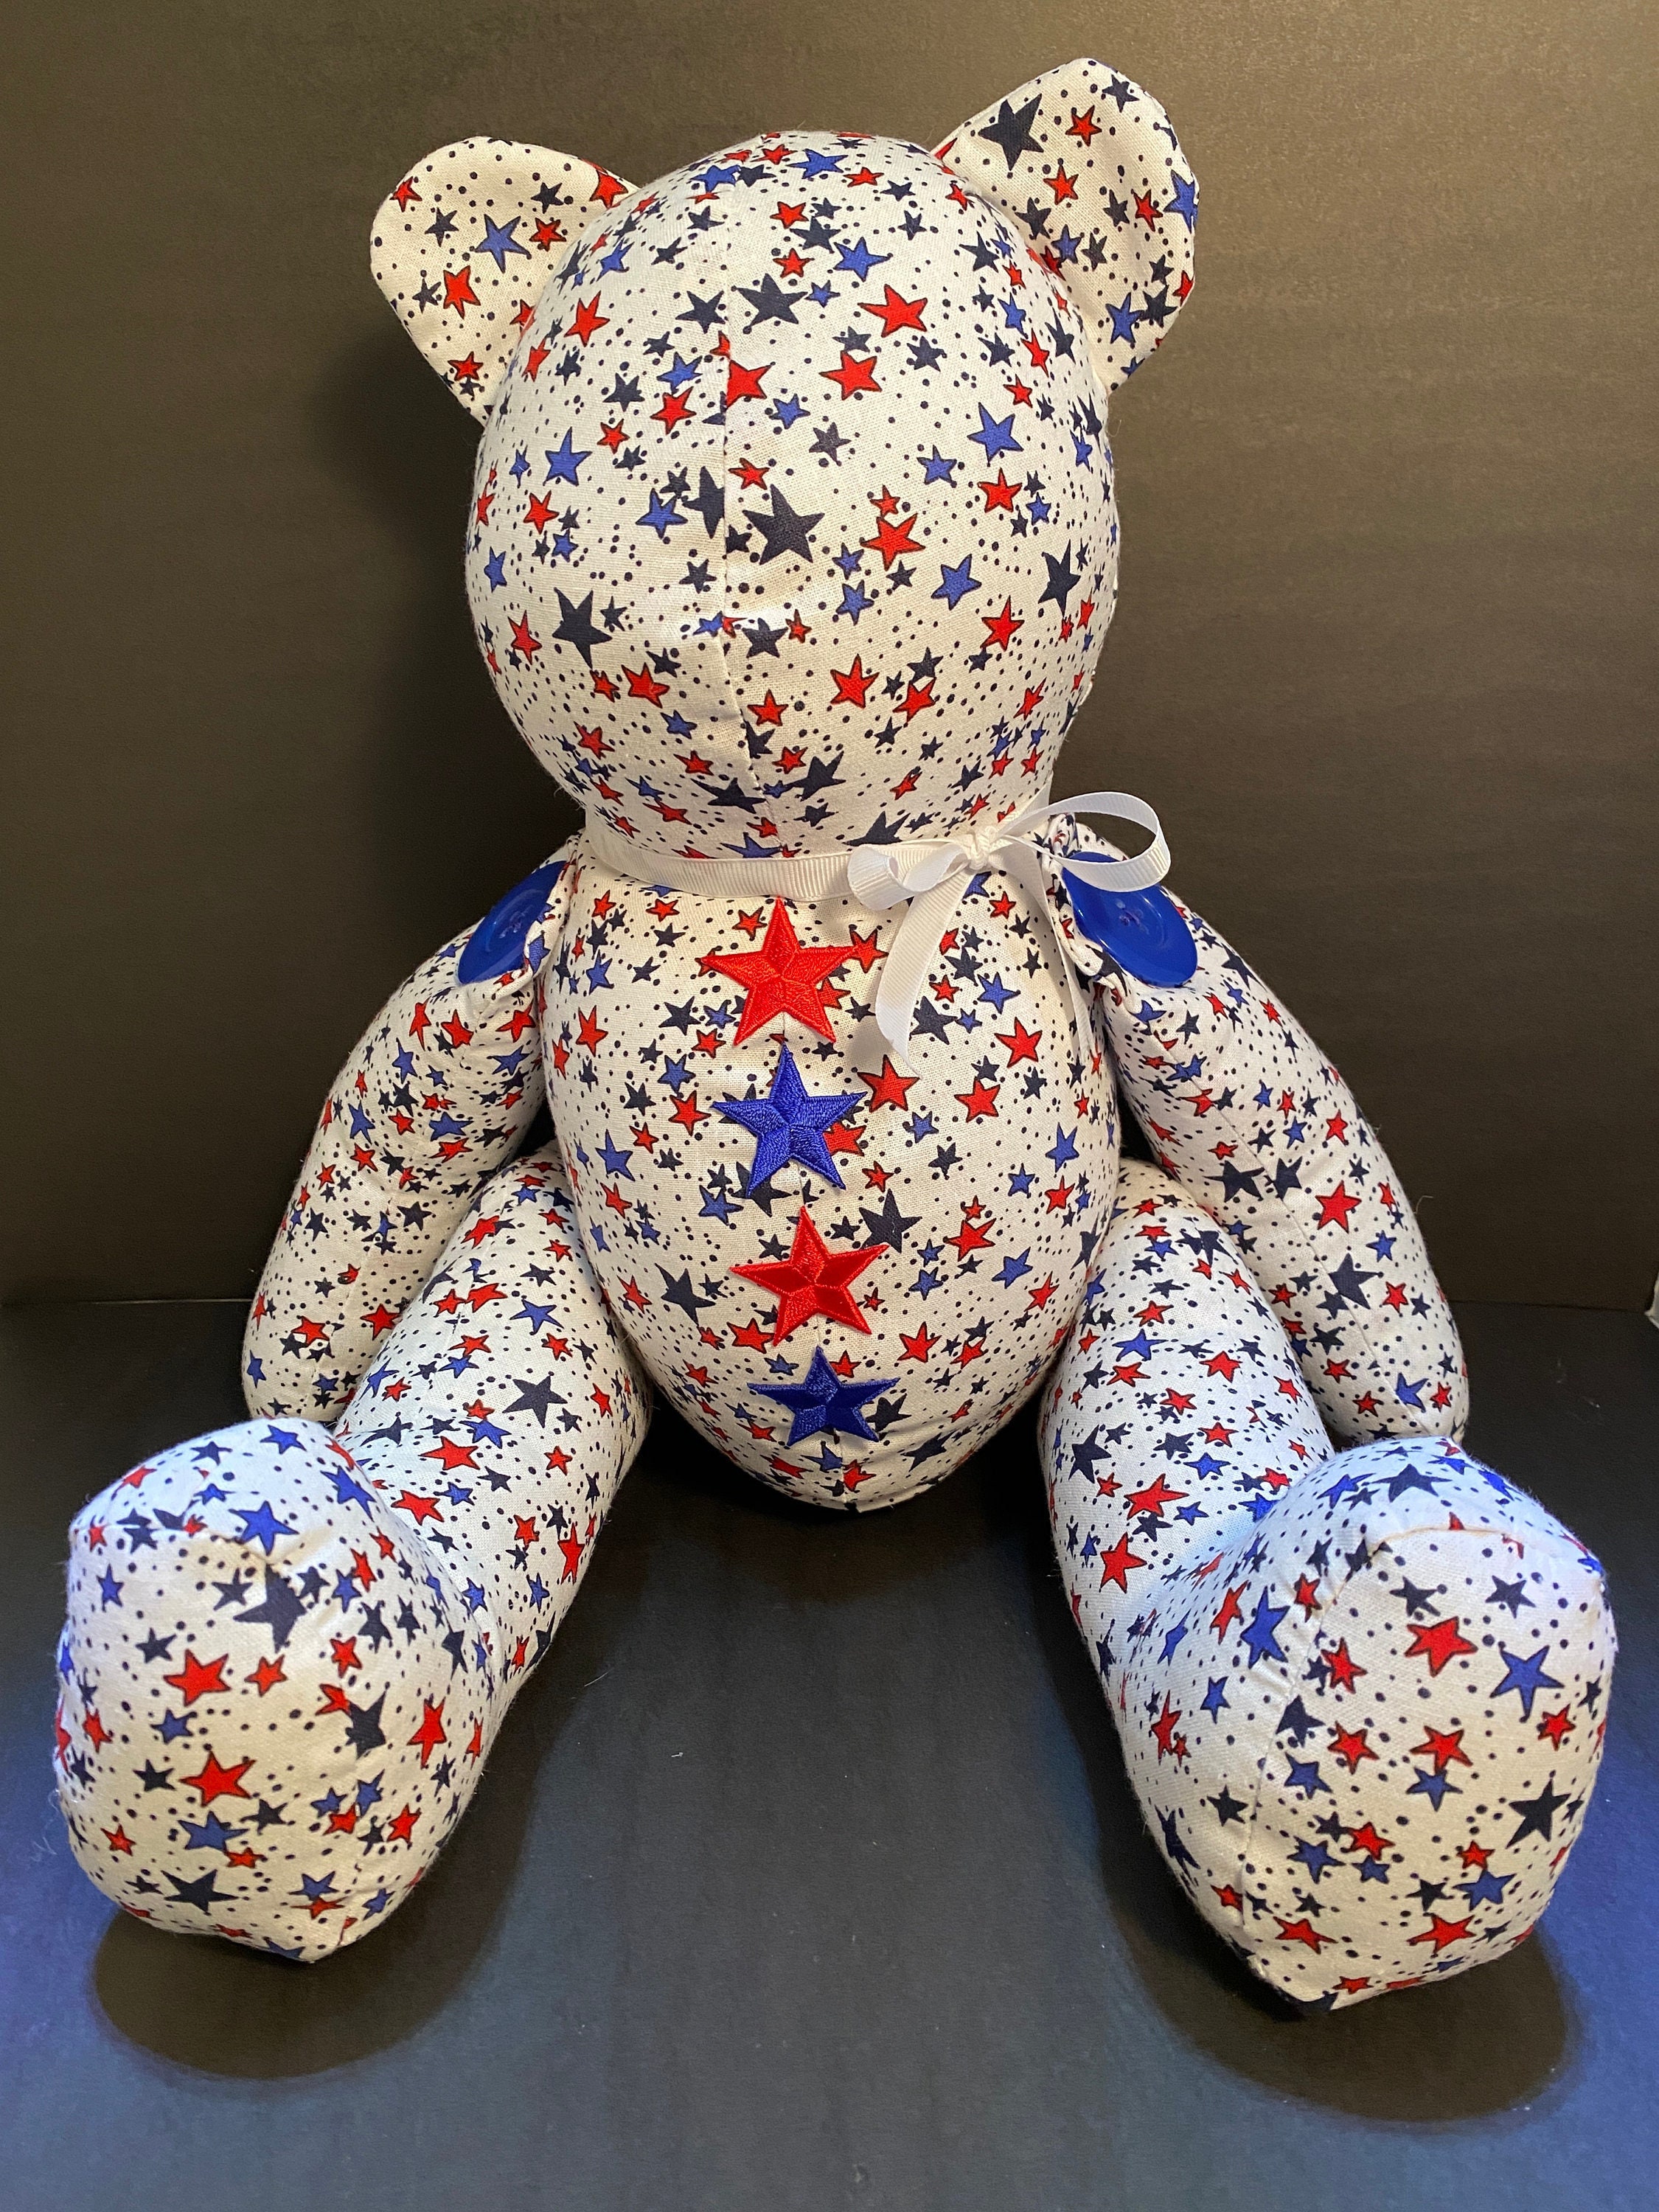 Patriotic Fabric Handmade Teddy Bear -  Hong Kong